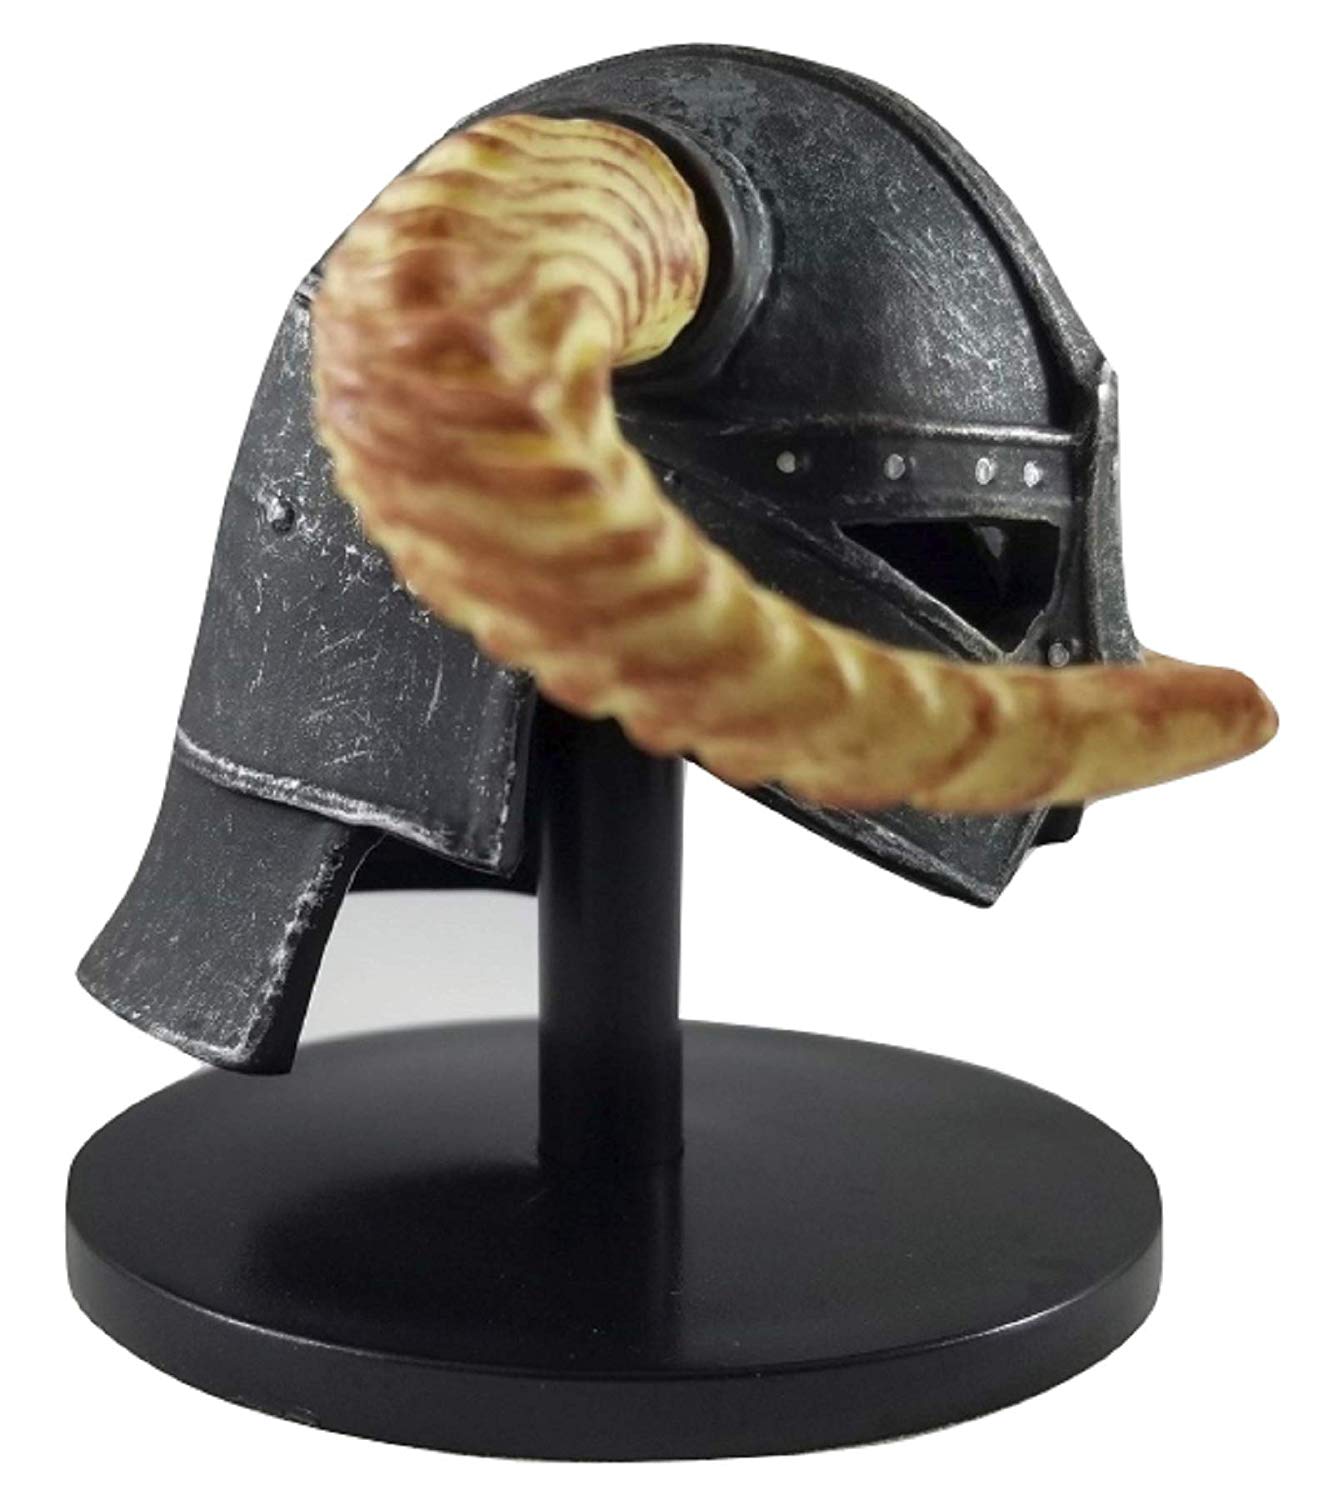 The Elder Scrolls V: Skyrim Dovahkiin Helmet Collectible Figure 3D Standee